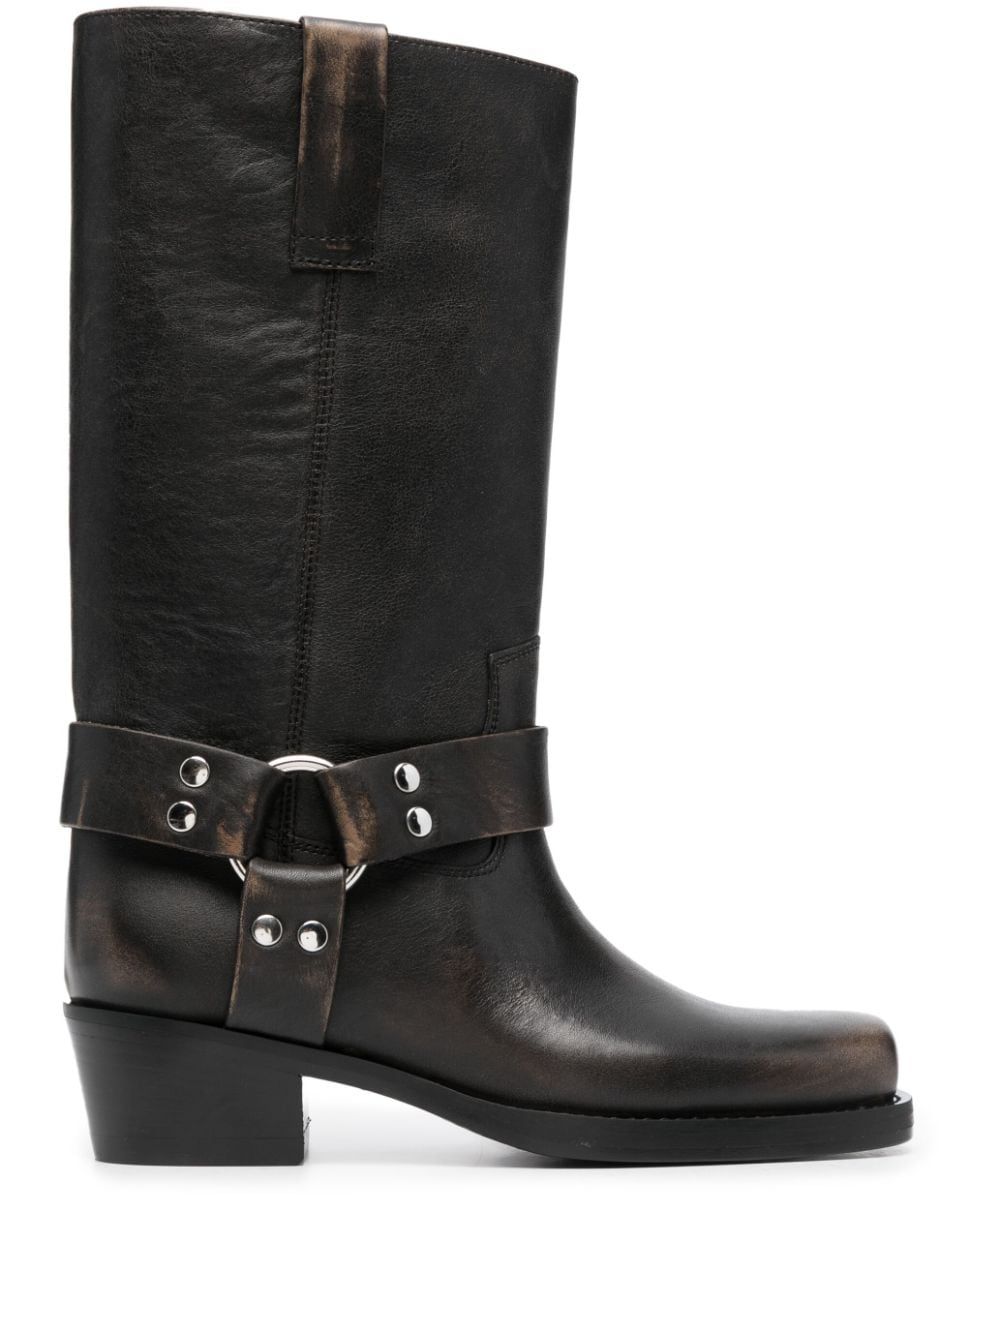 Paris Texas Roxy 45mm Leather Cowboy Boots - Farfetch | Farfetch Global